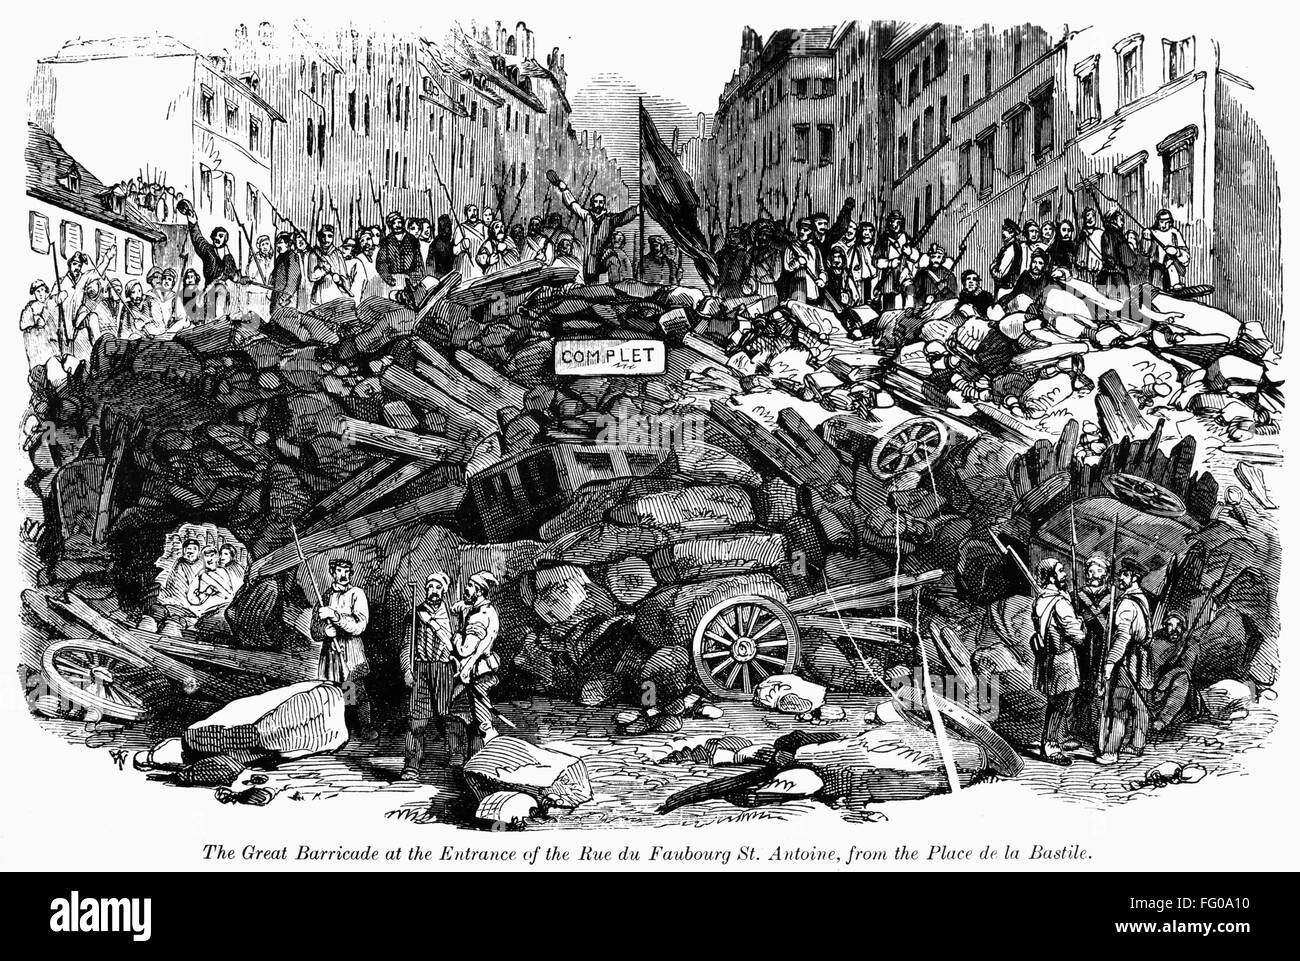 Европа после революции. Баррикады во Франции 1848. Баррикады революции 1848 года во Франции. Баррикада 1848 года Париж. Революция в Германии 1848-1849.